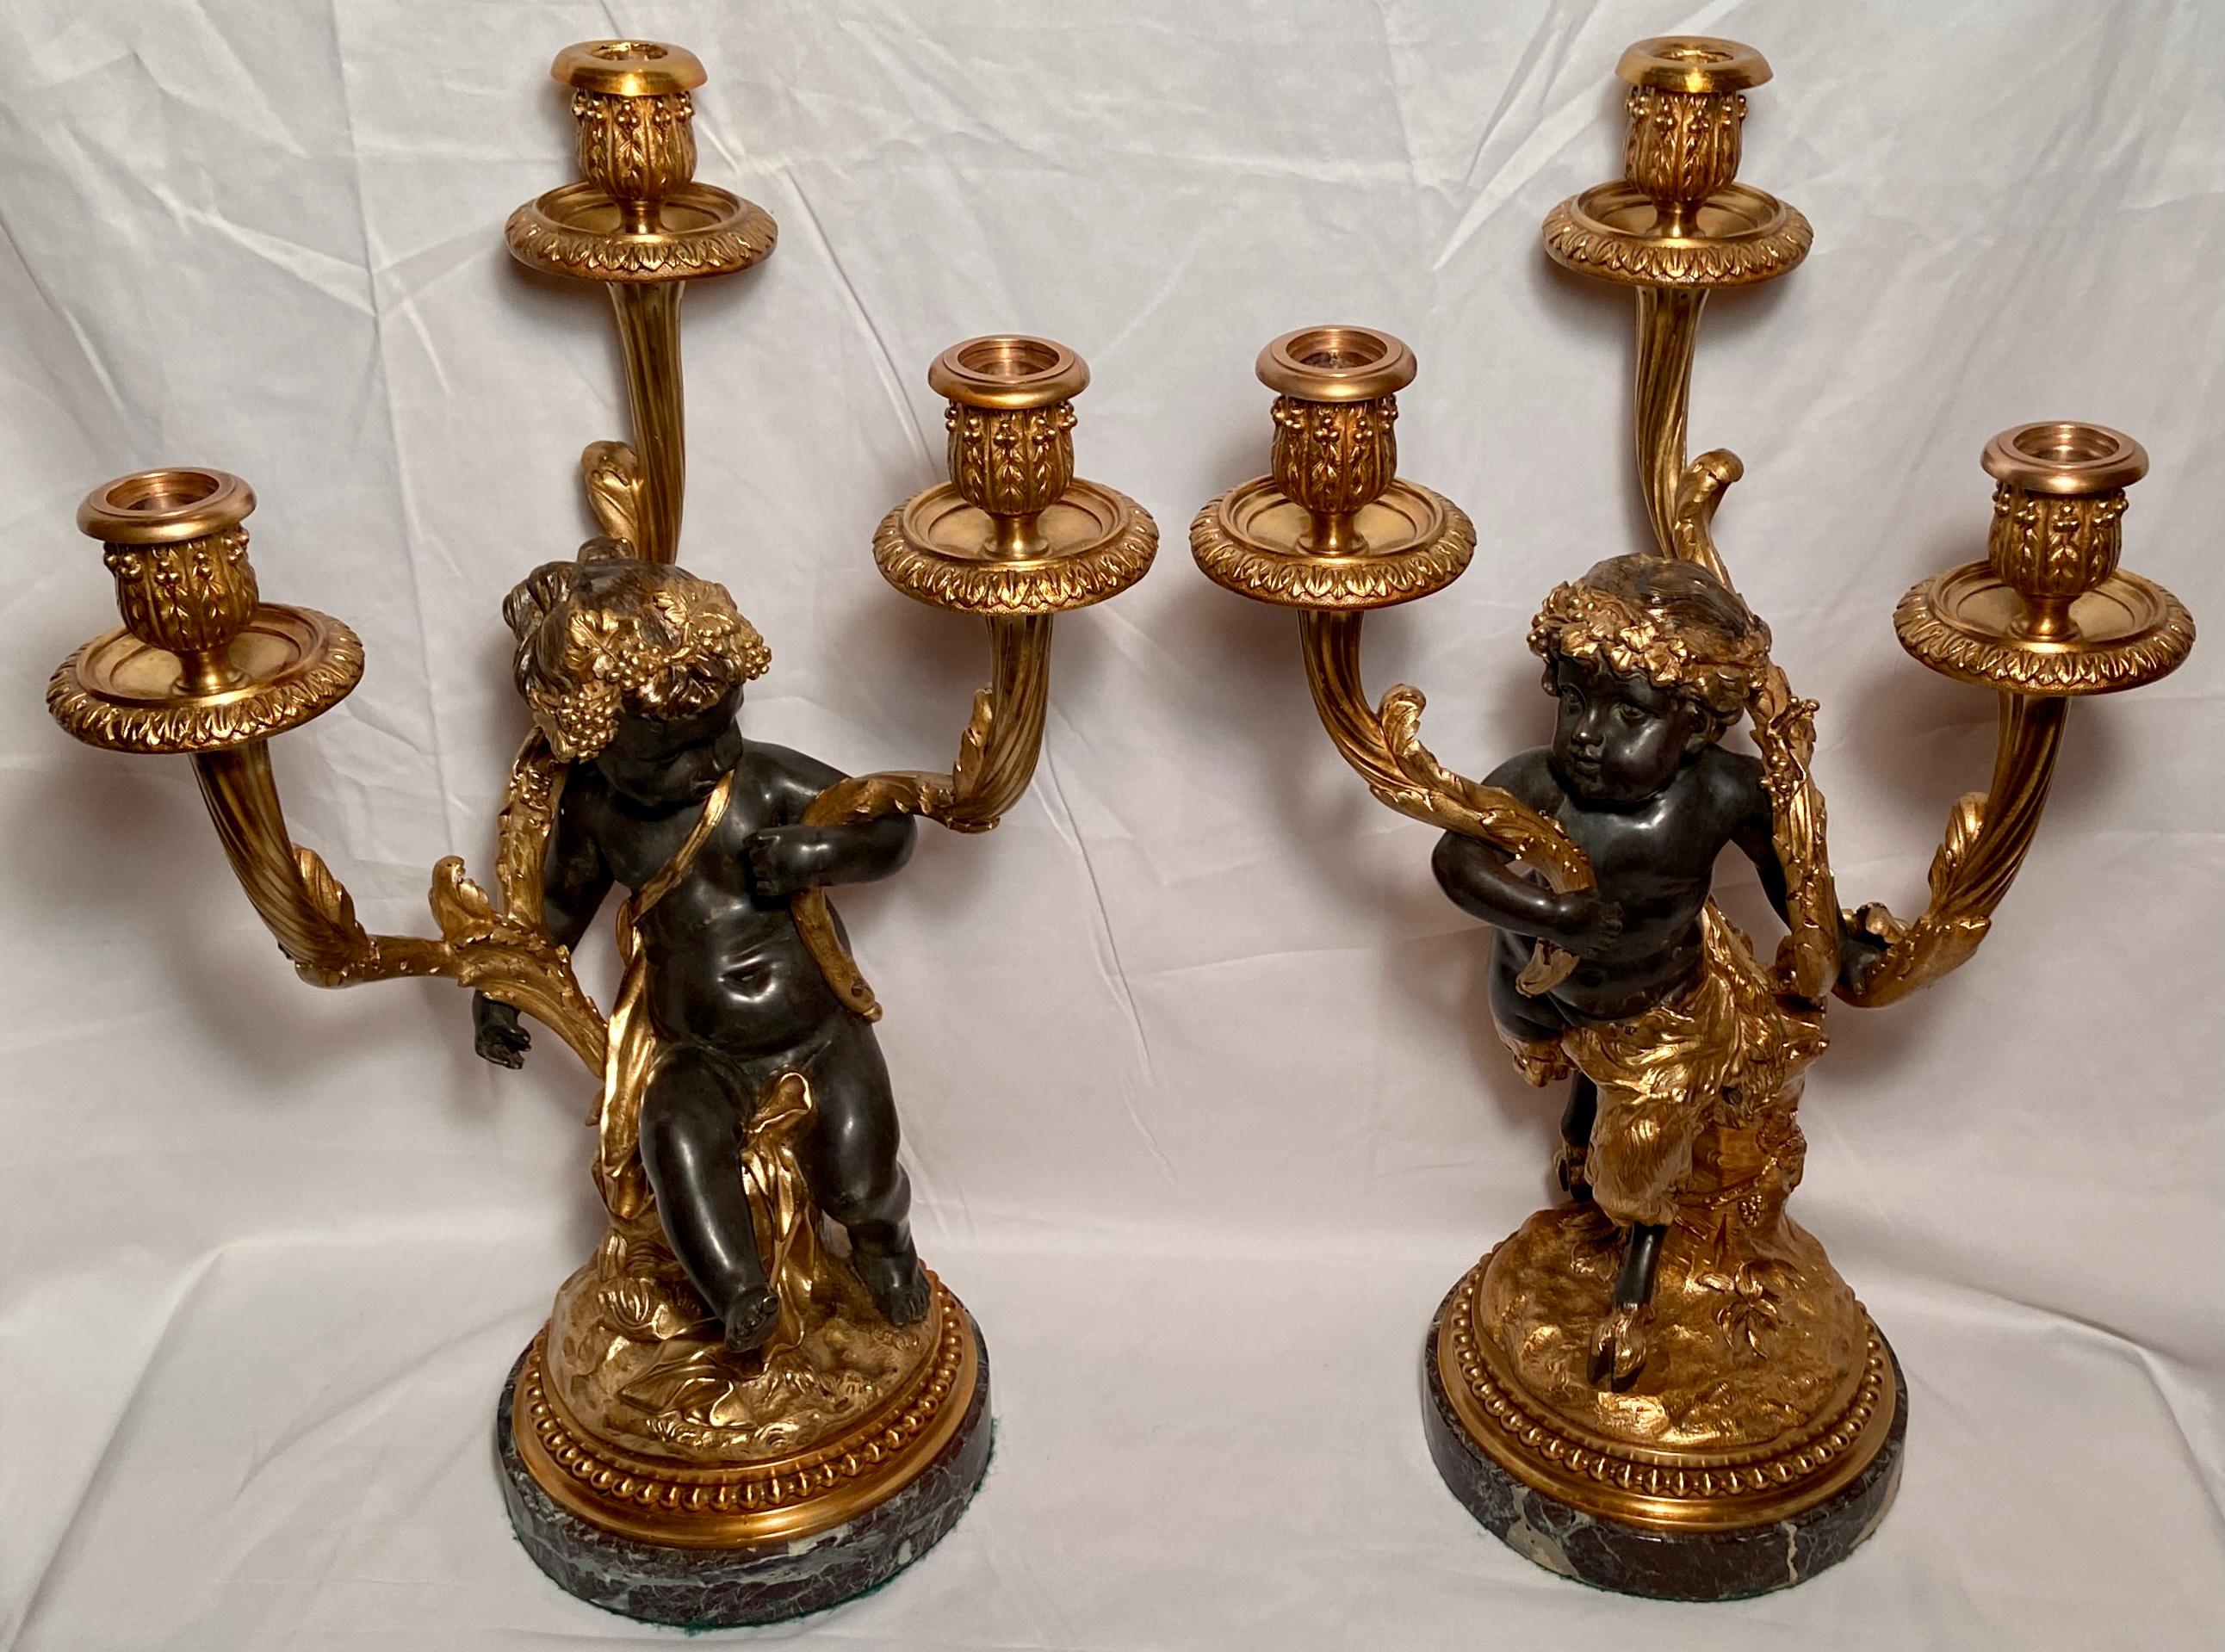 Paire de candélabres anciens français en bronze doré avec figure de bacchanale, vers 1870-1880.